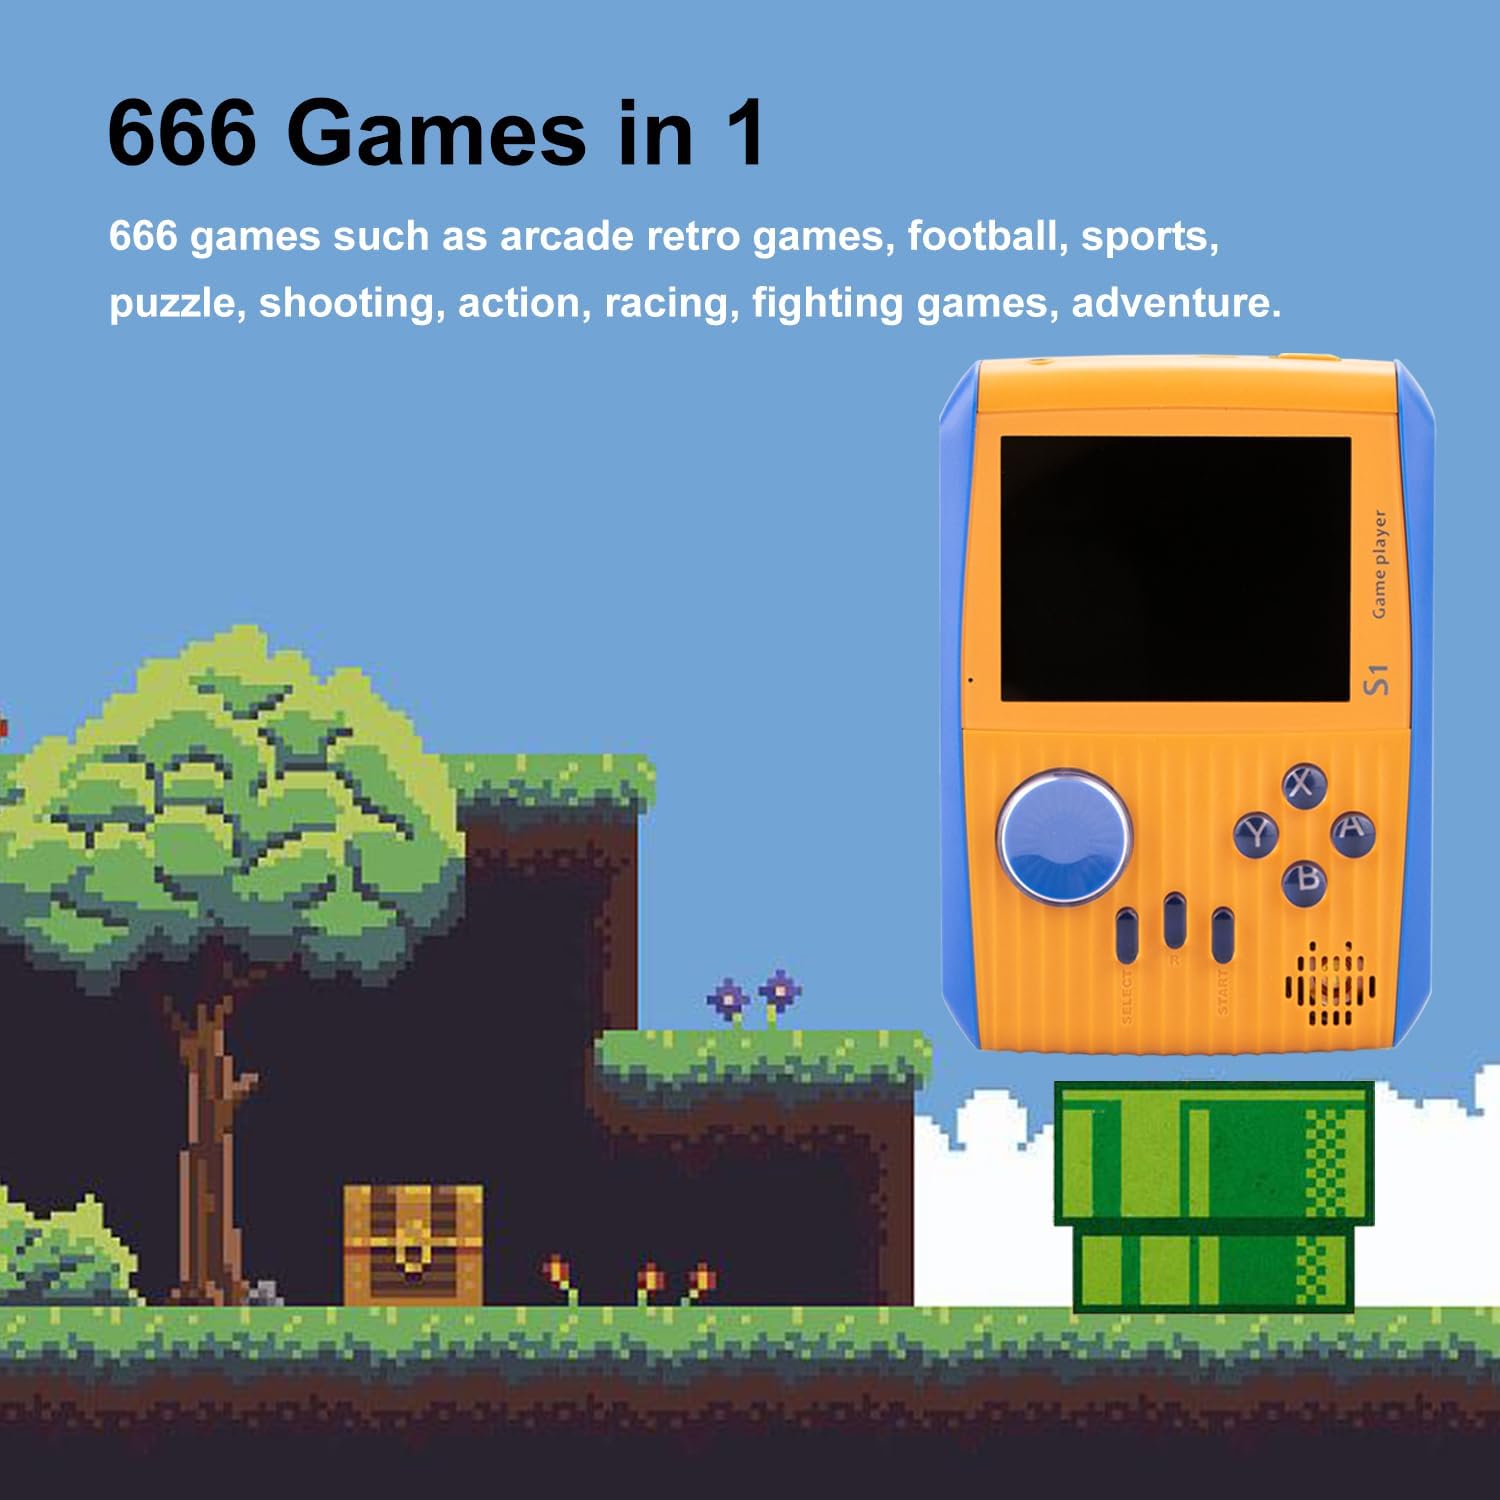 وحدة تحكم ألعاب صغيرة محمولة للأطفال مع 666 لعبة كلاسيكية ريترو بطارية قابلة للشحن 3 بوصة - برتقالى